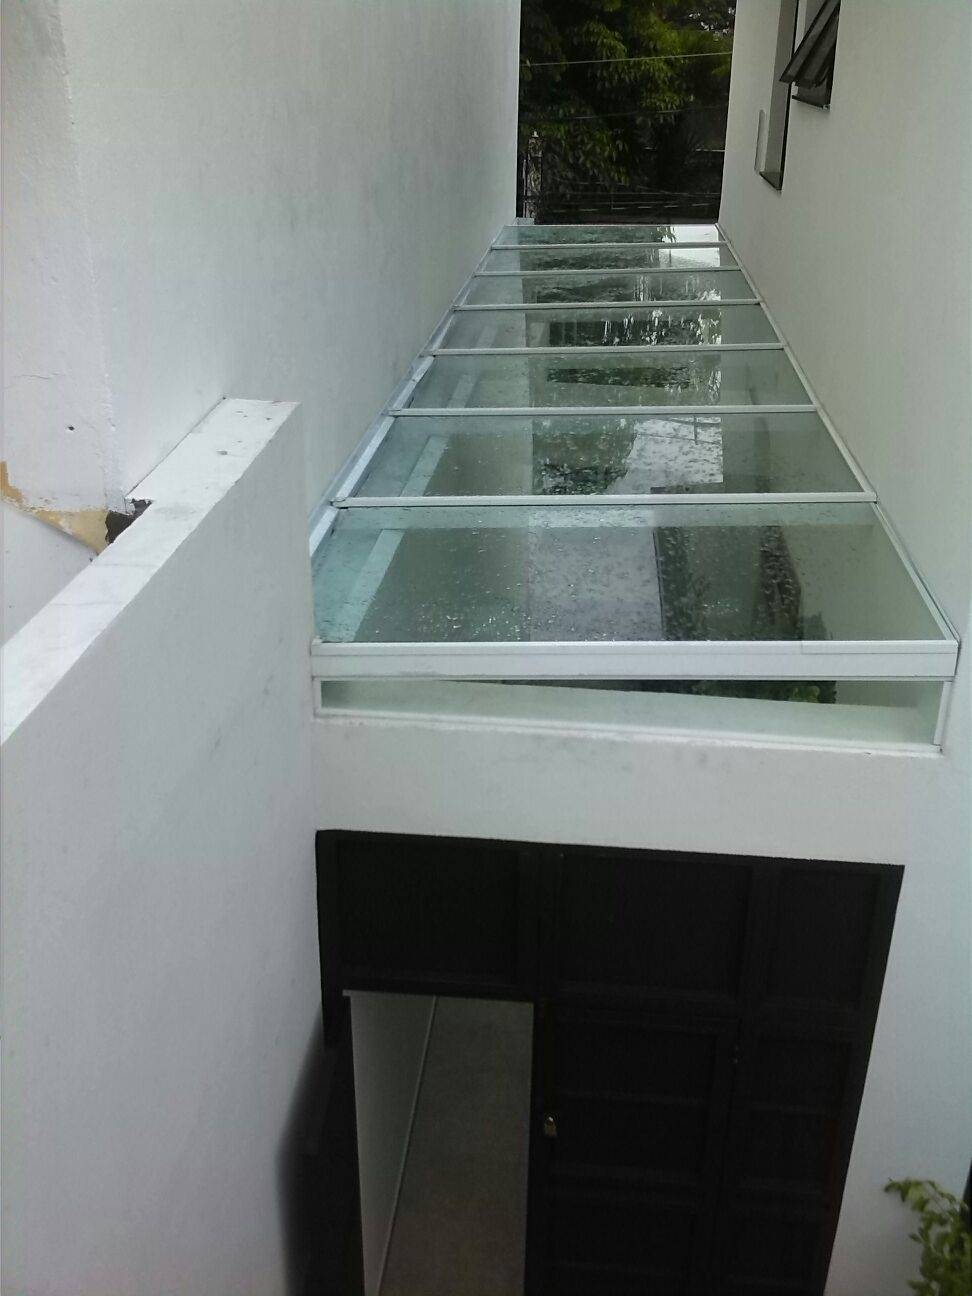 Cobertura de Vidro Temperado Preço no Sacomã - Cobertura de Vidro para Garagem